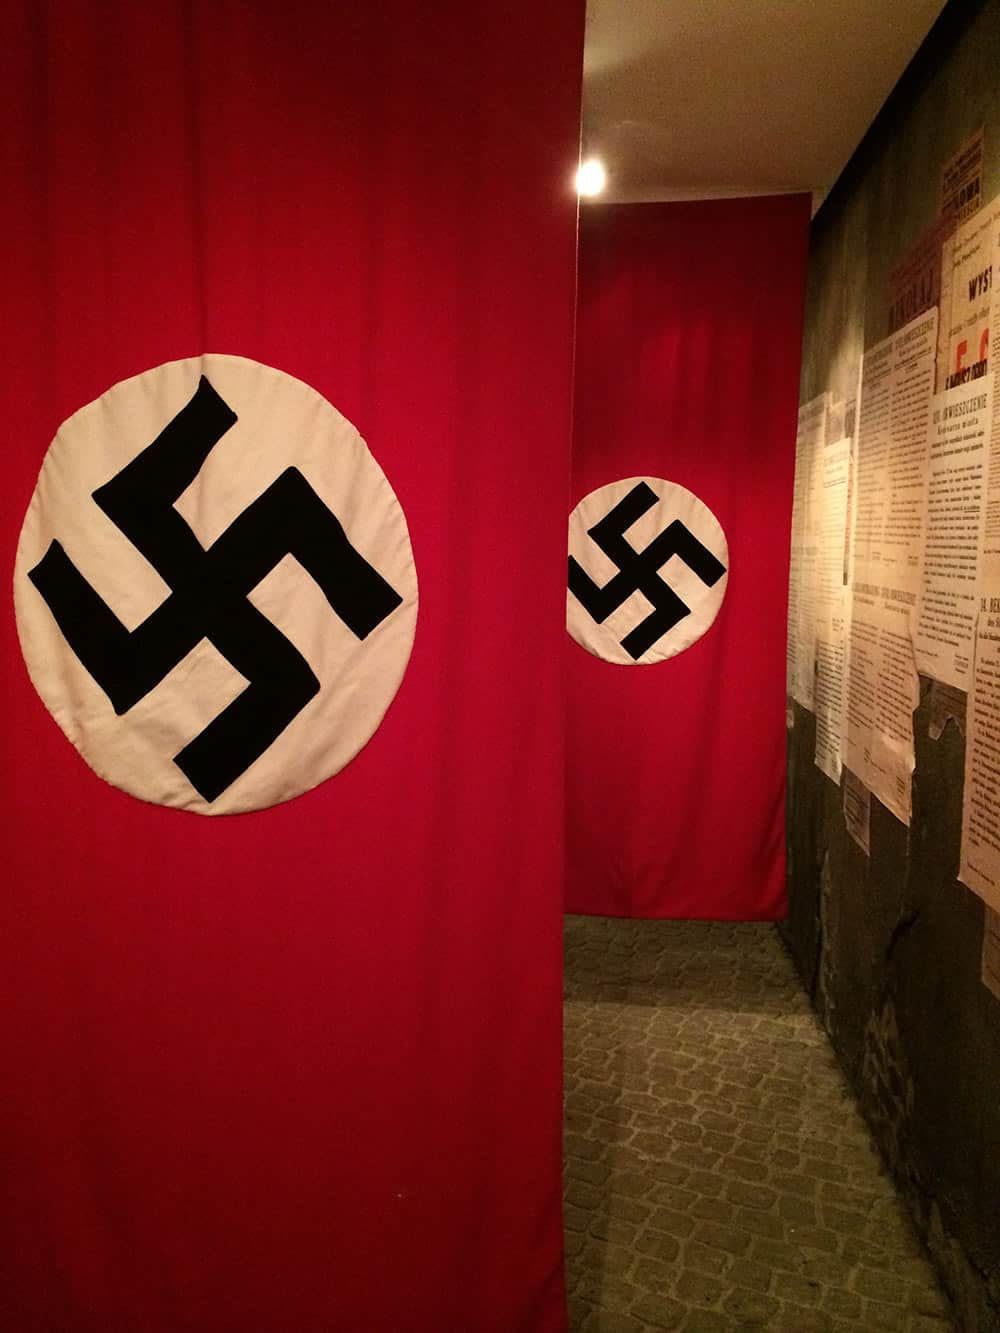 A fábrica de Schindler é uma super aula sobre a segunda guerra mundial! Conheça esse e outros pontos turísticos da Cracóvia no post.